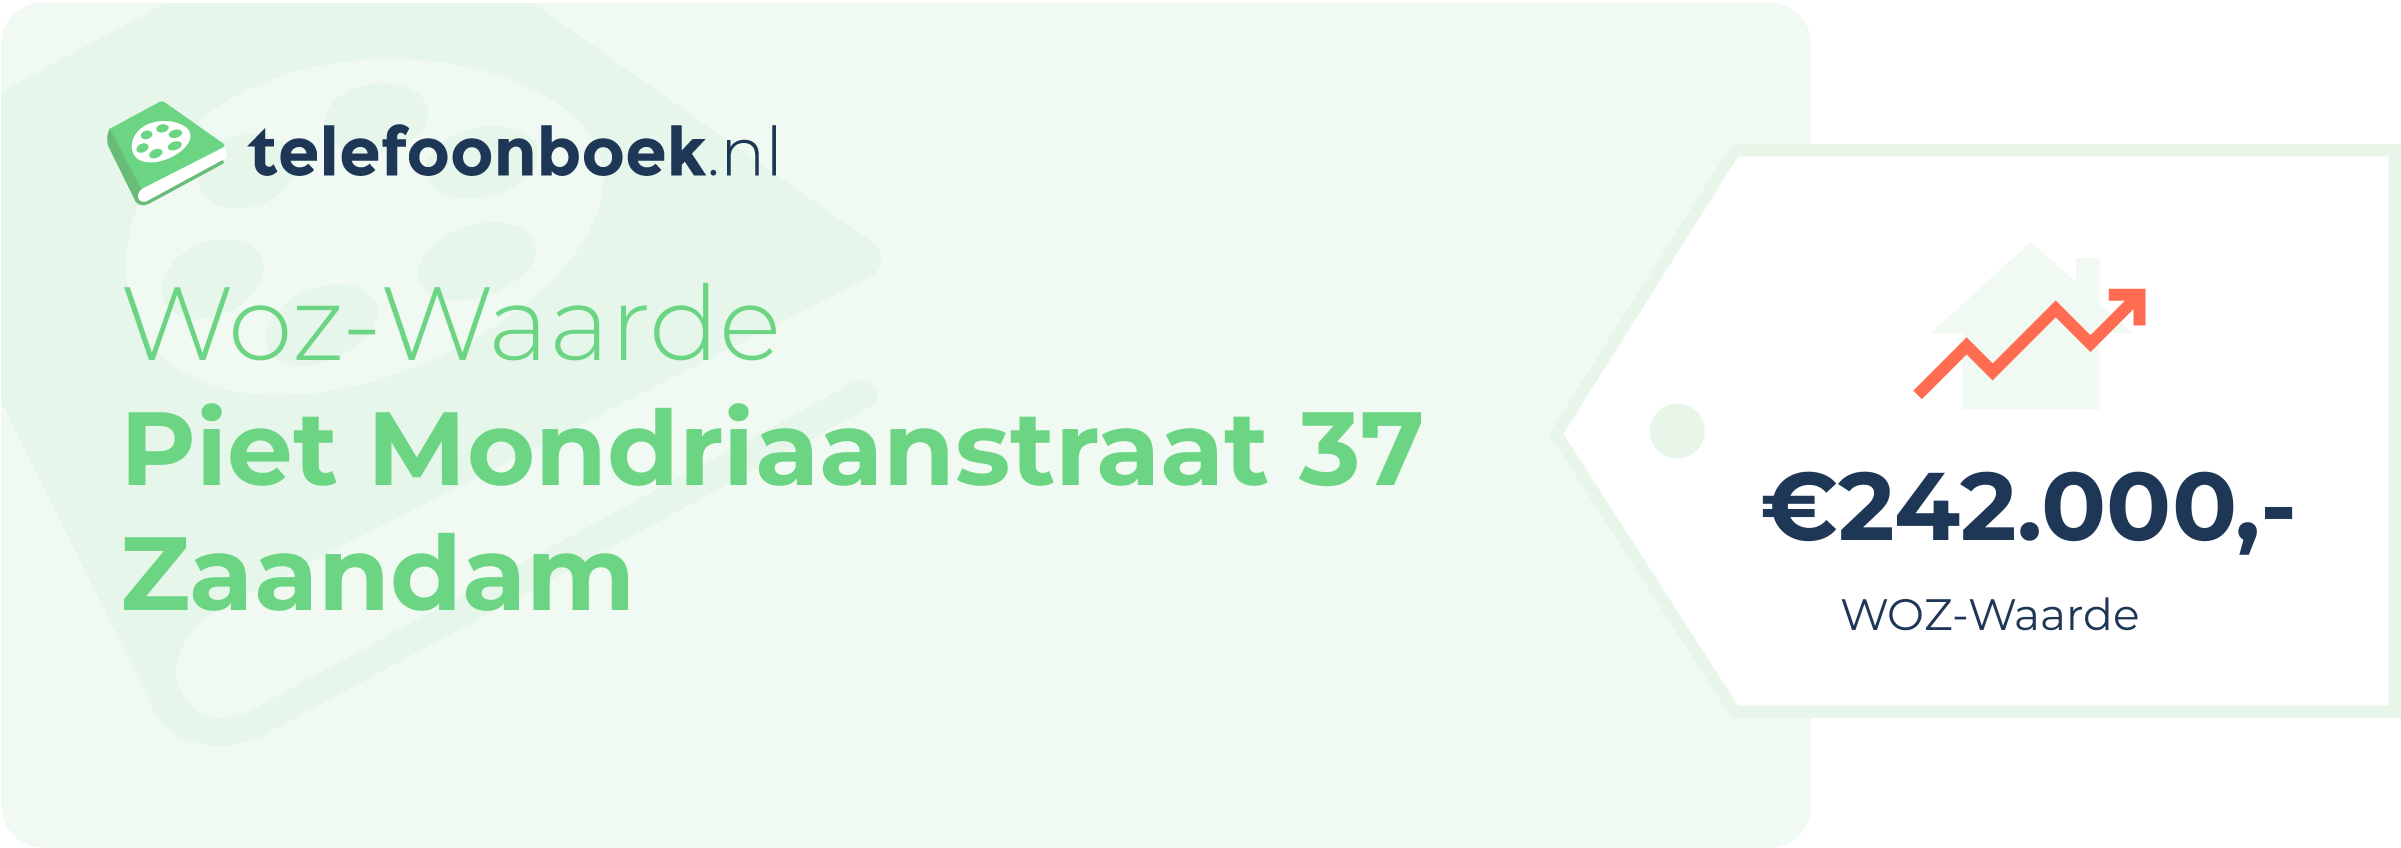 WOZ-waarde Piet Mondriaanstraat 37 Zaandam